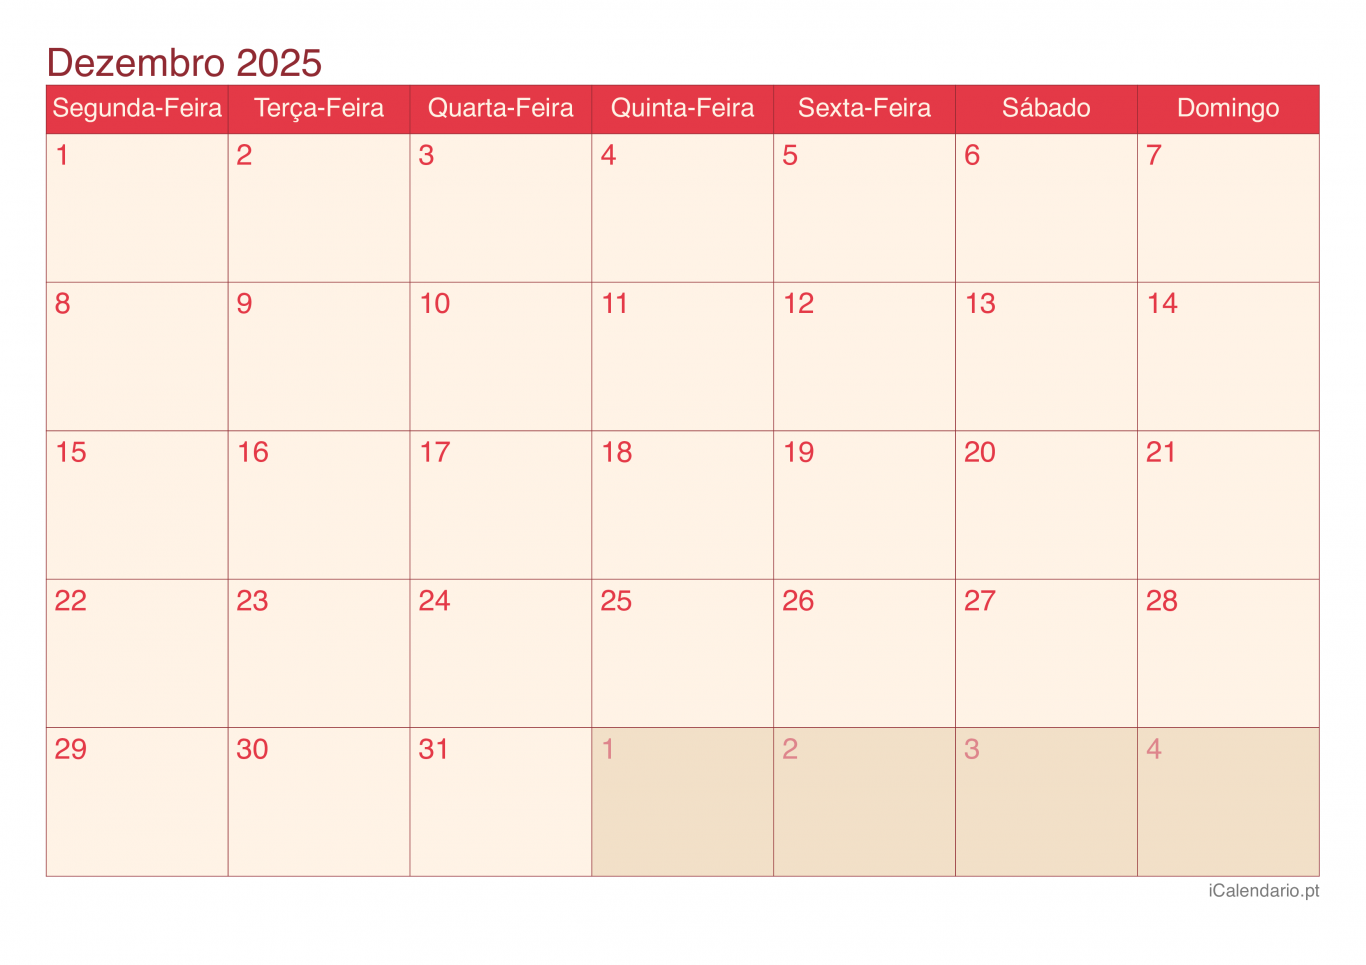 Calendário de dezembro 2025 - Cherry